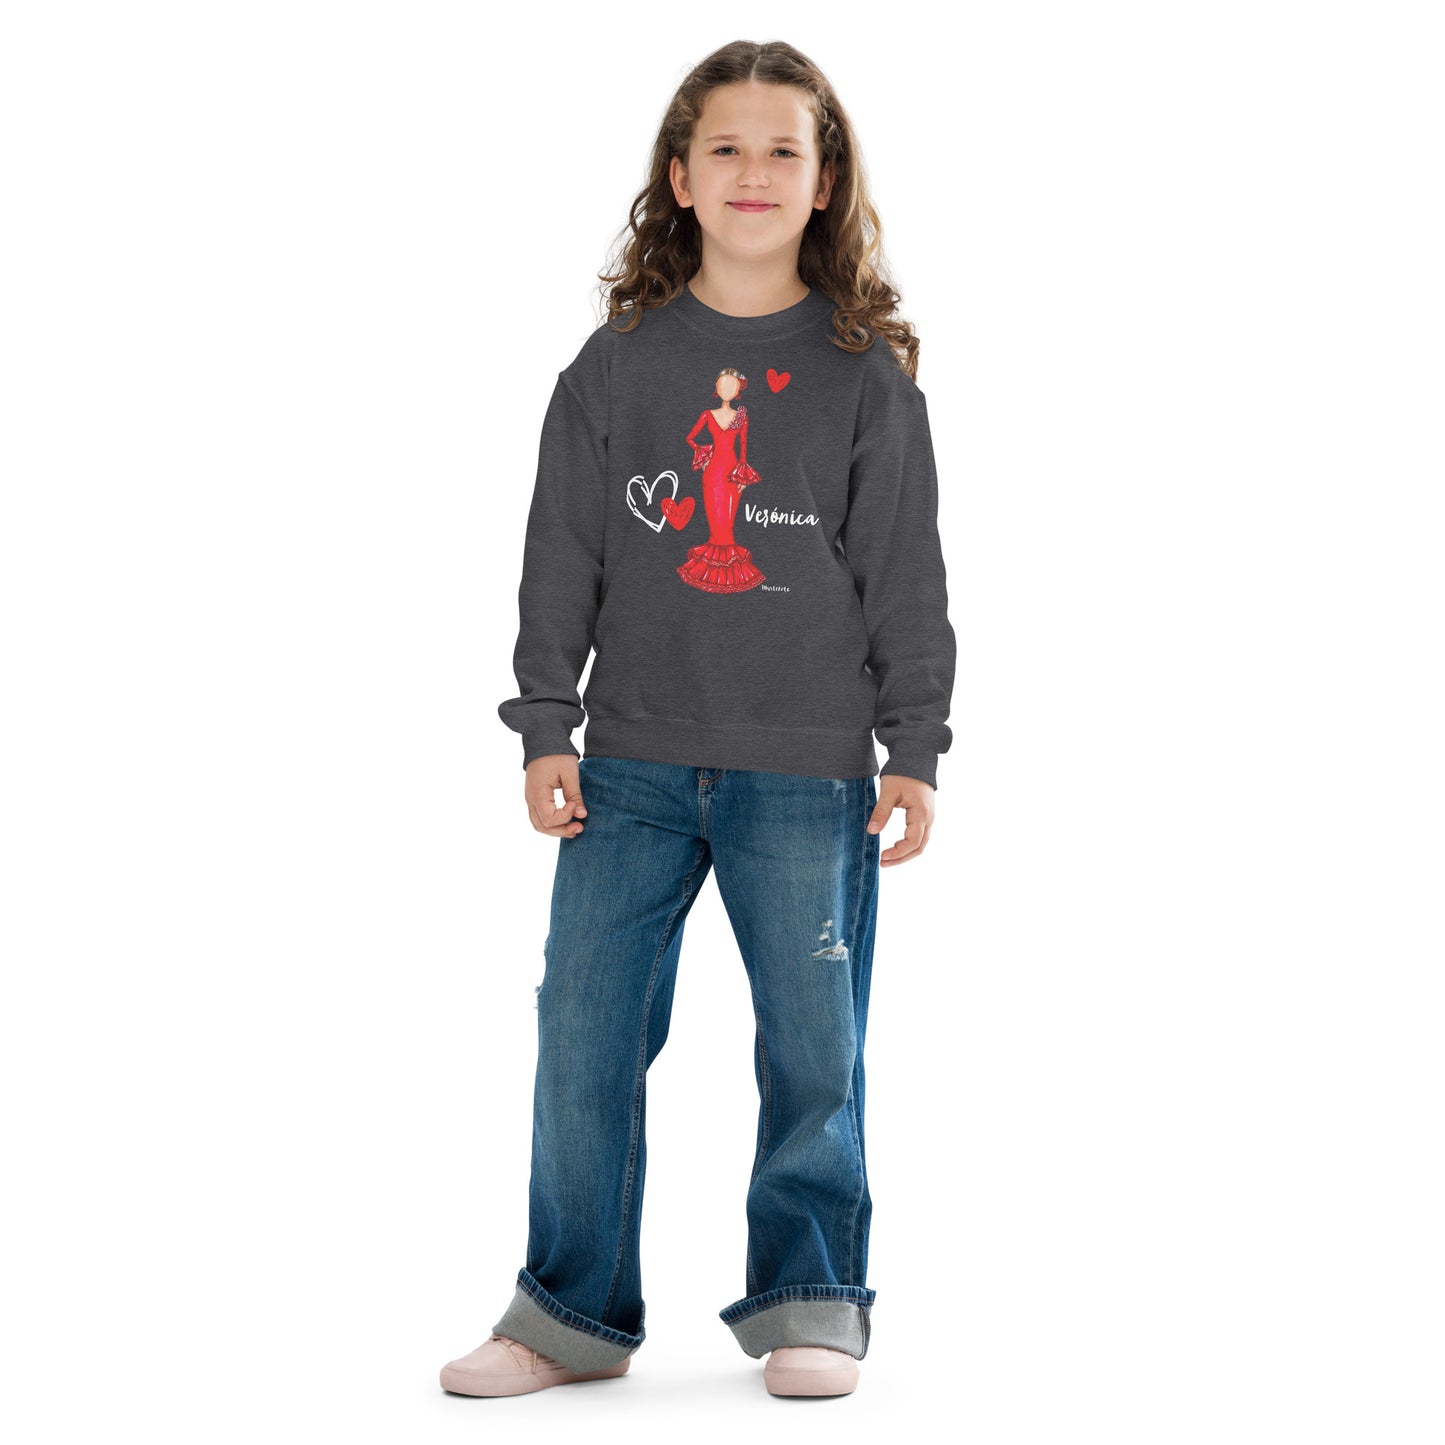 a little girl wearing a mickey mouse sweatshirt